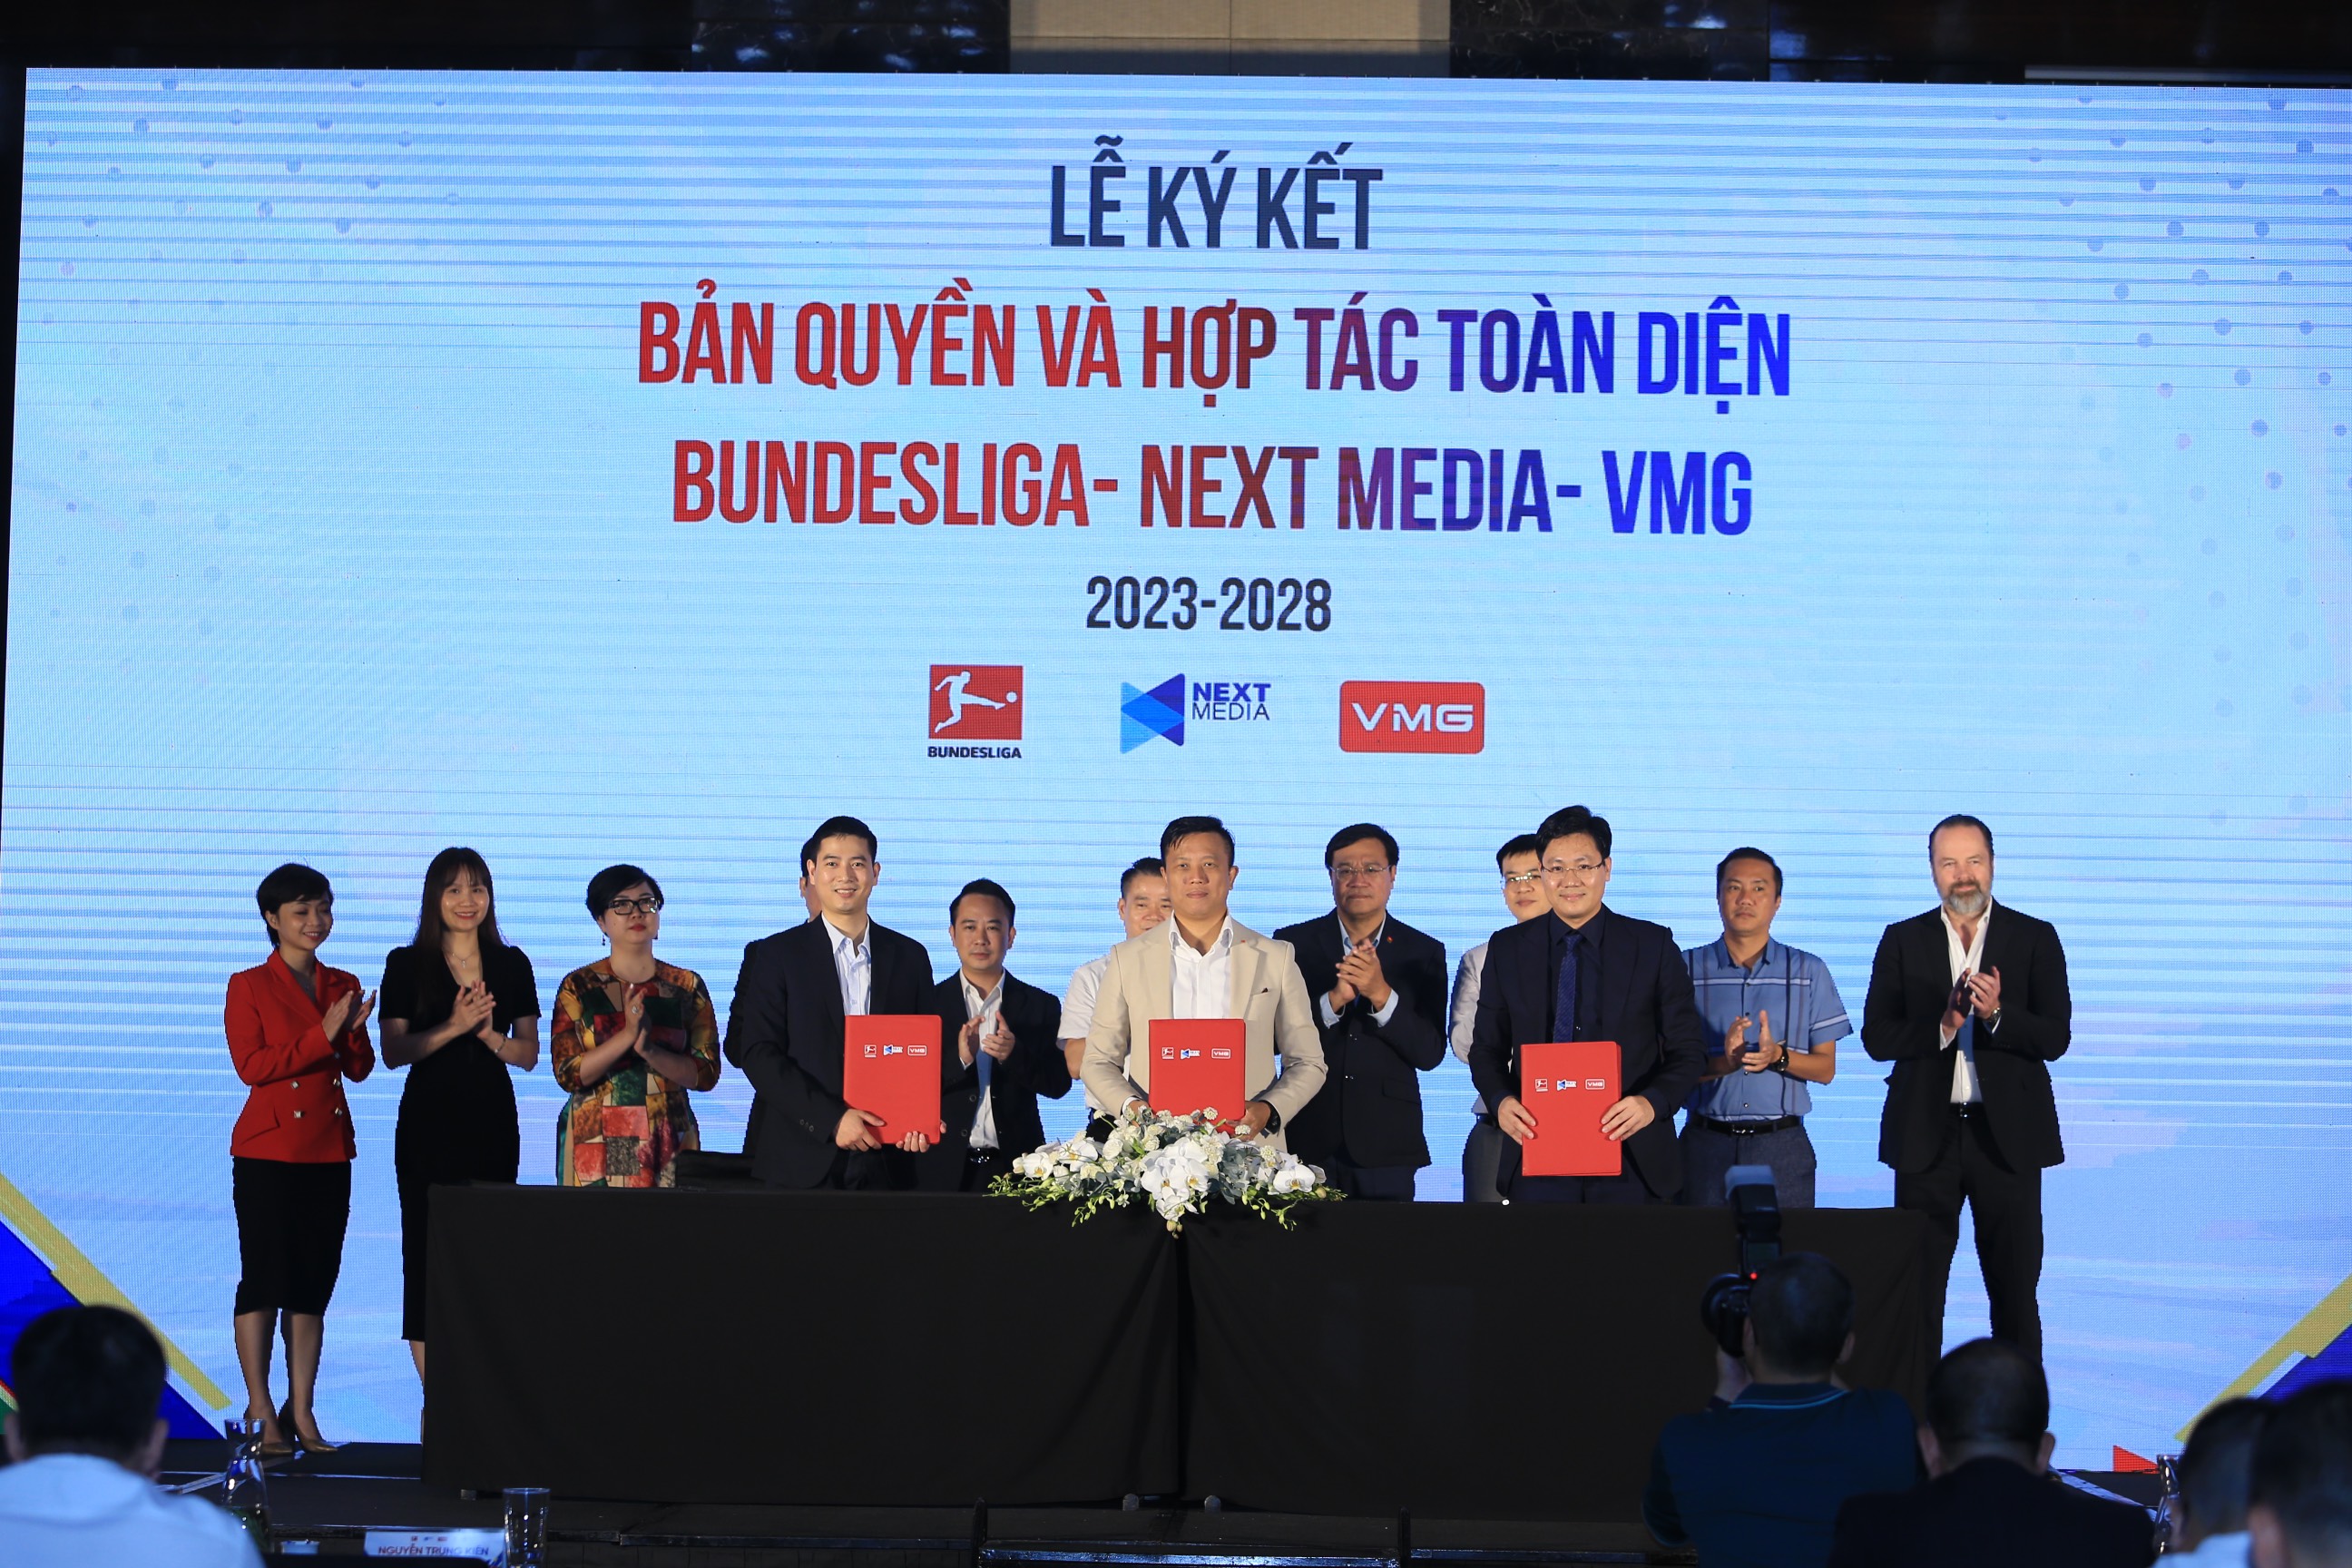 Next Media và VMG Media công bố sở hữu độc quyền giải vô địch quốc gia Đức (Bundesliga) trên mọi hạ tầng phát sóng tại Việt Nam trong 5 mùa giải - Ảnh: Đức Cường